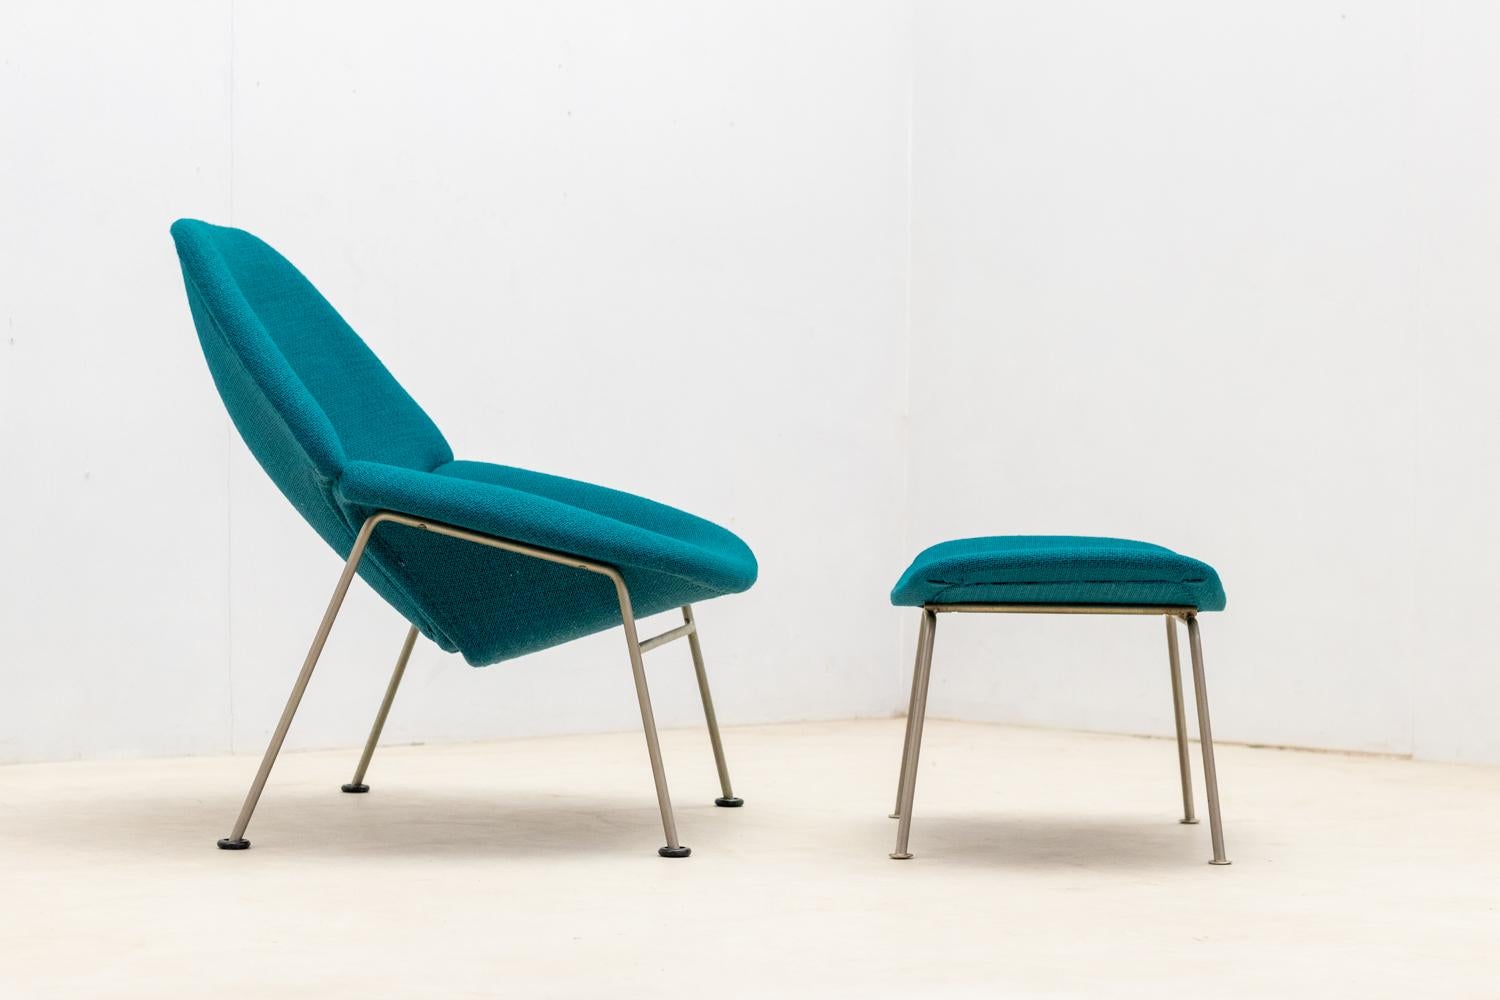 1. Auflage  Oyster Sessel (Modell F555)  entworfen von dem Franzosen Pierre Paulin und 1958 von Artifort eingeführt. 

Der Sessel wurde neu gepolstert.
Schöner Vintage-Zustand.

Preis für ein Set : Sessel und seine Ottomane.

2 Sets verfügbar